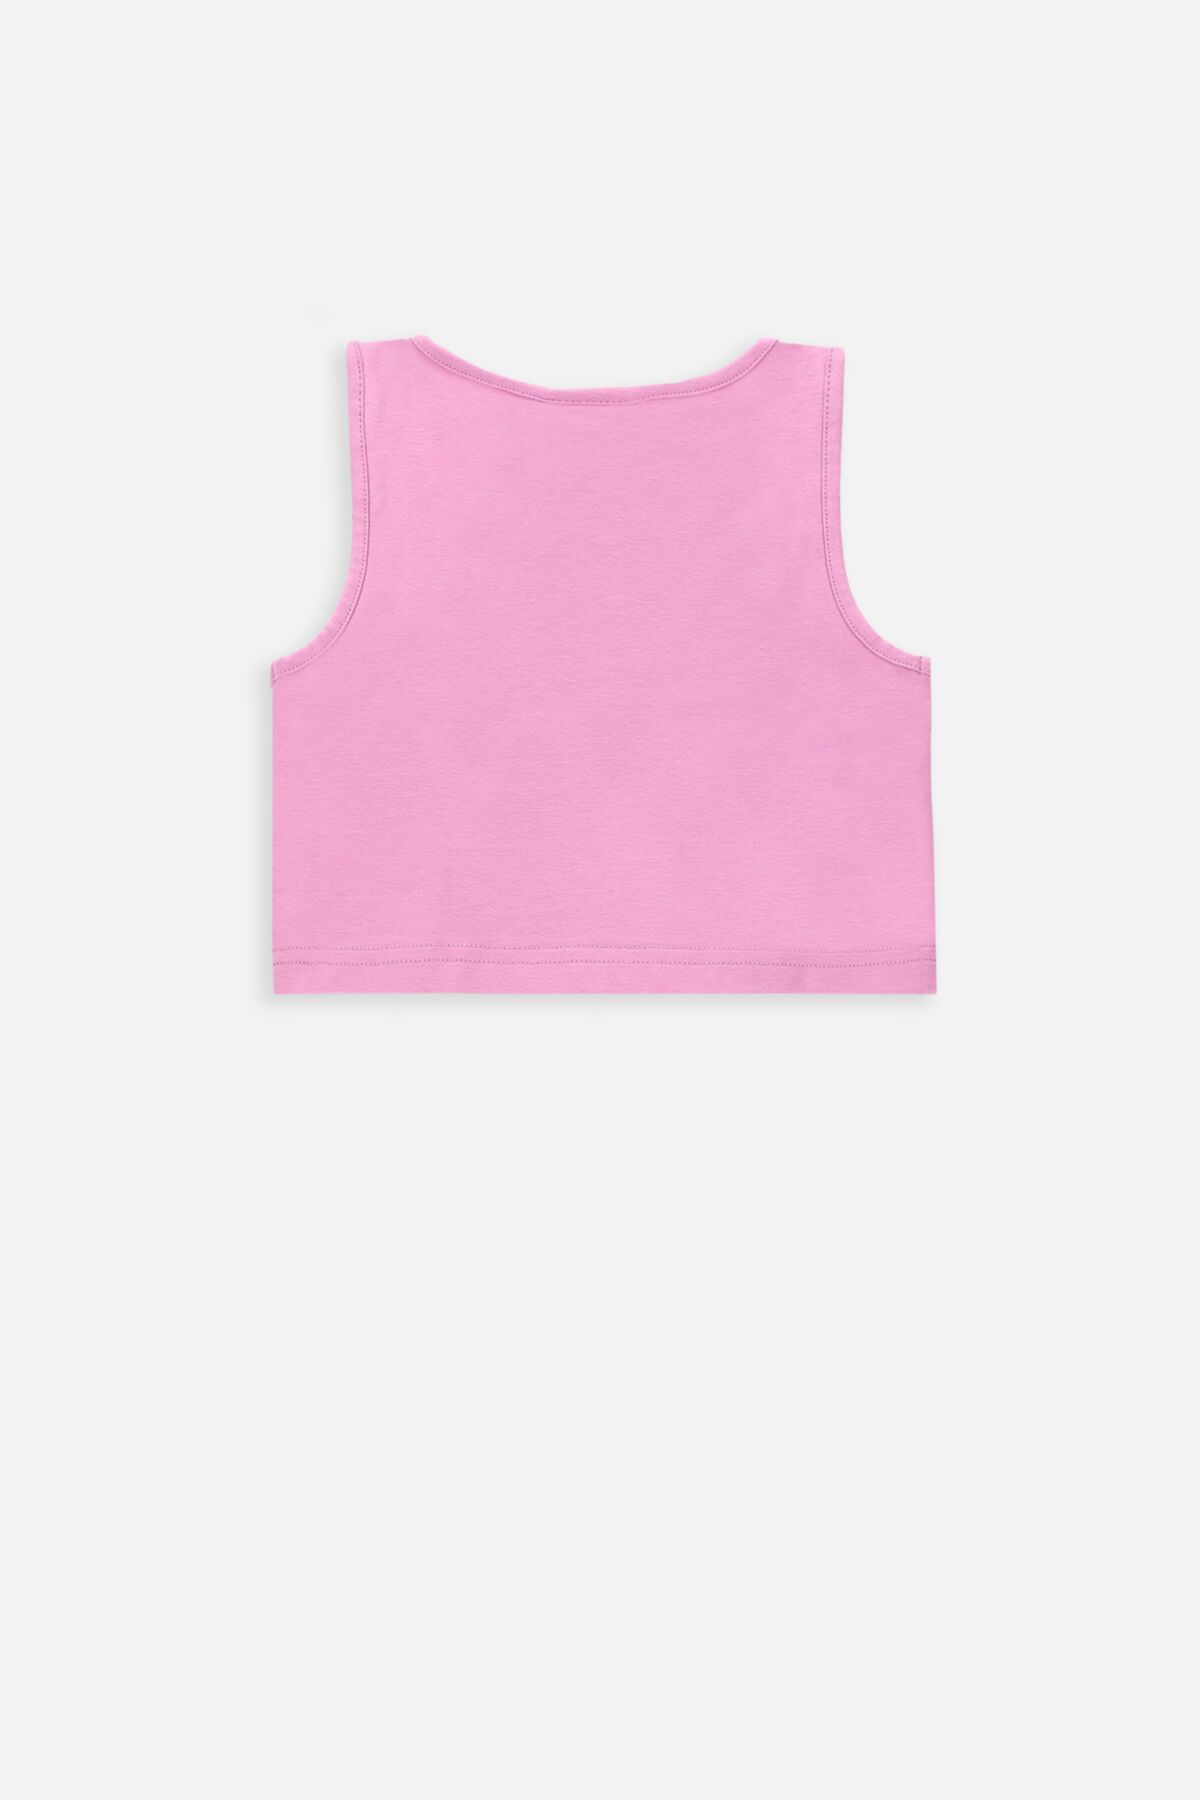 T-shirt bez rękawów różowy sportowy crop top z nadrukiem 2234627